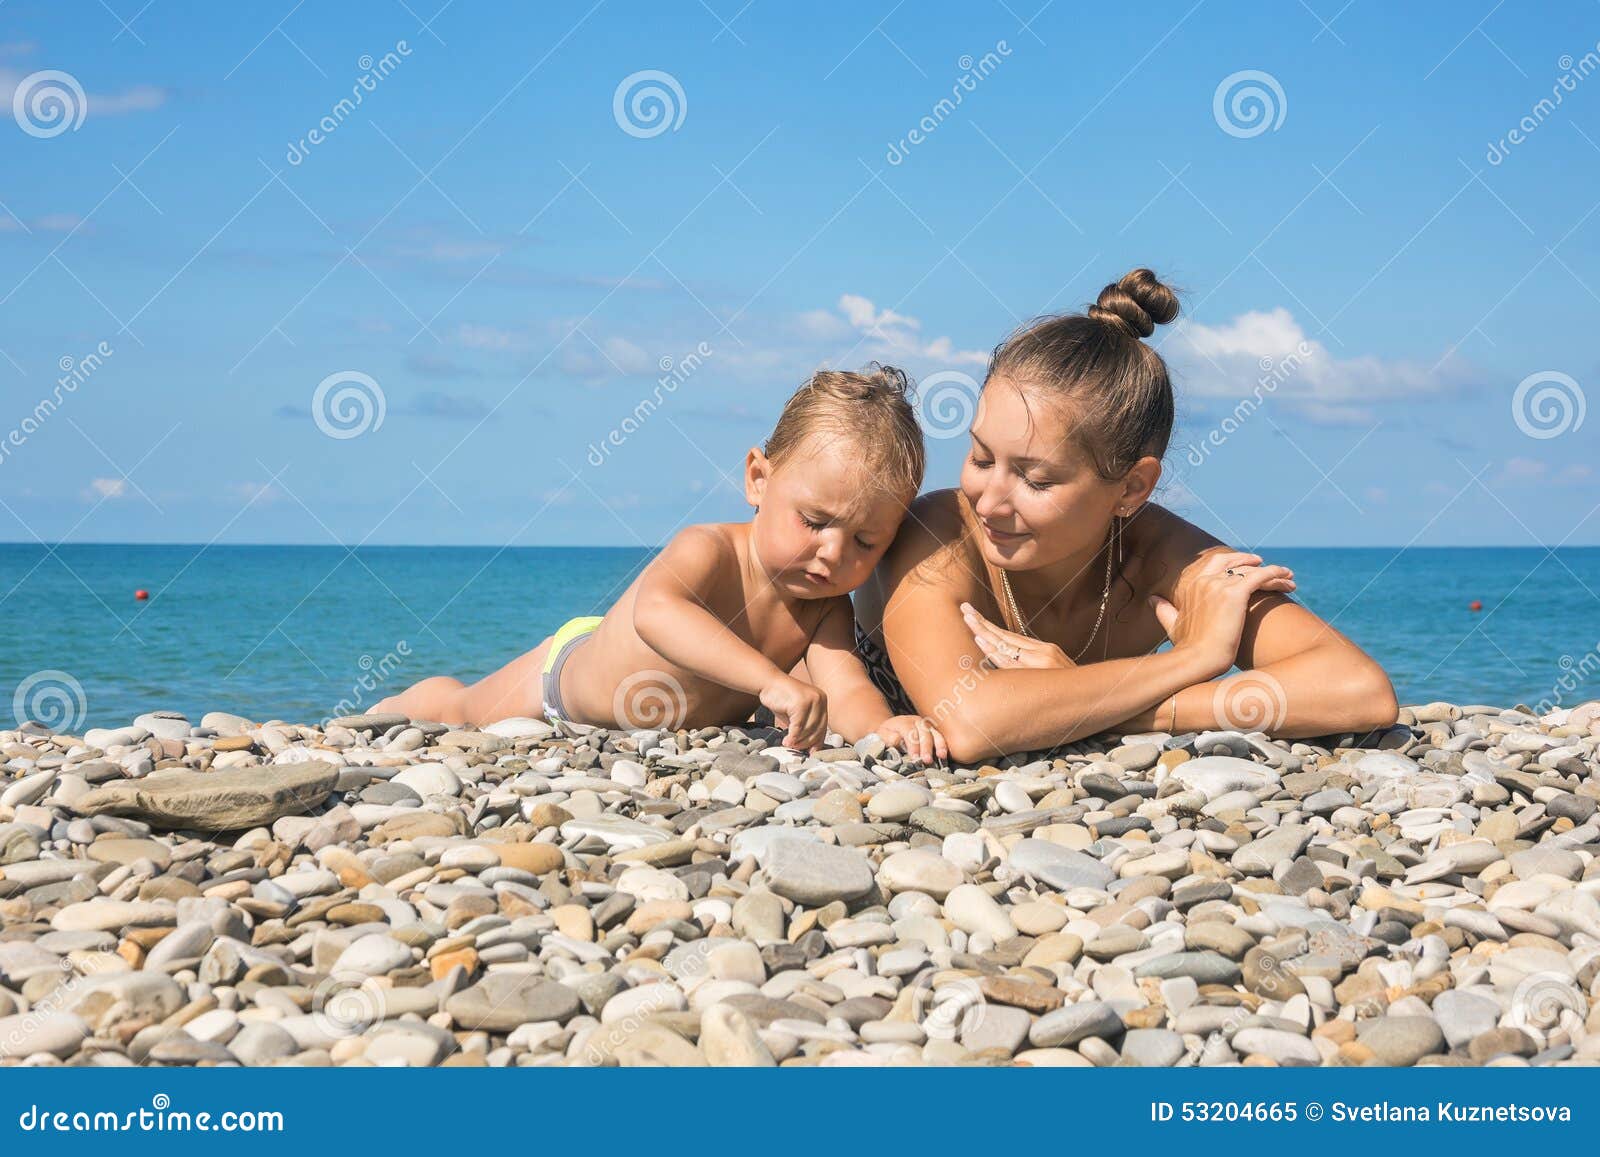 нудиский пляж с голыми детьми фото 22